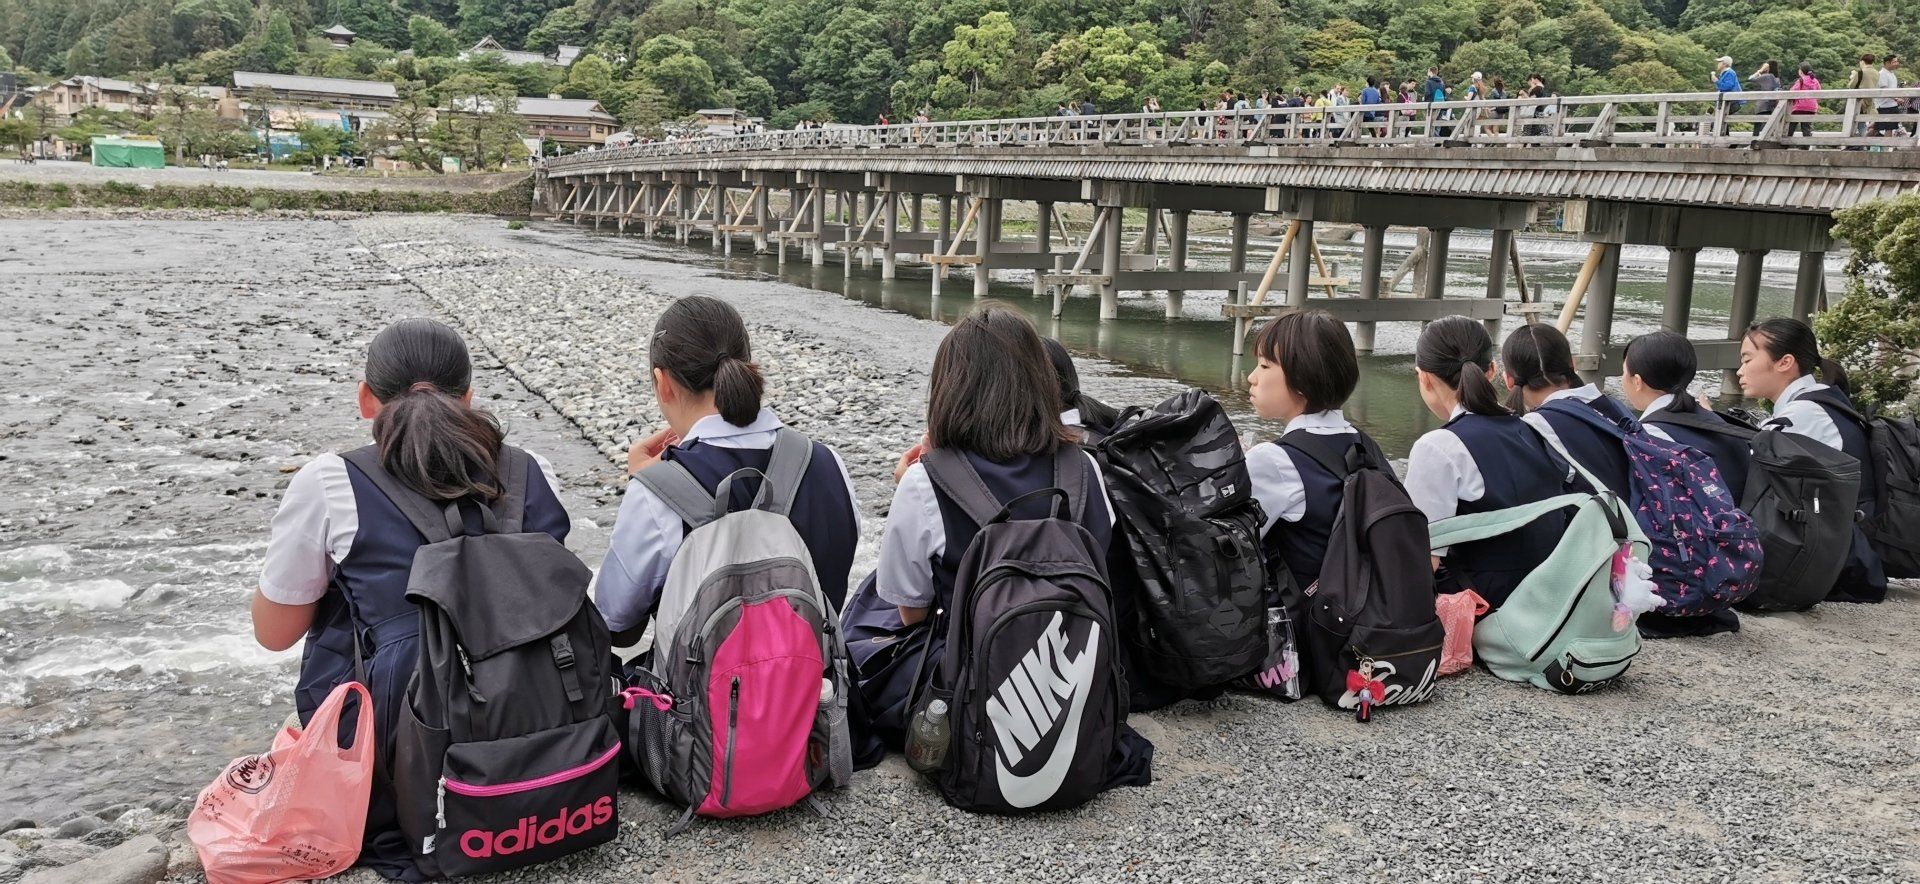 Togetsu-kyo-Brücke; Togetsu-kyo - bridge; Arashiyama